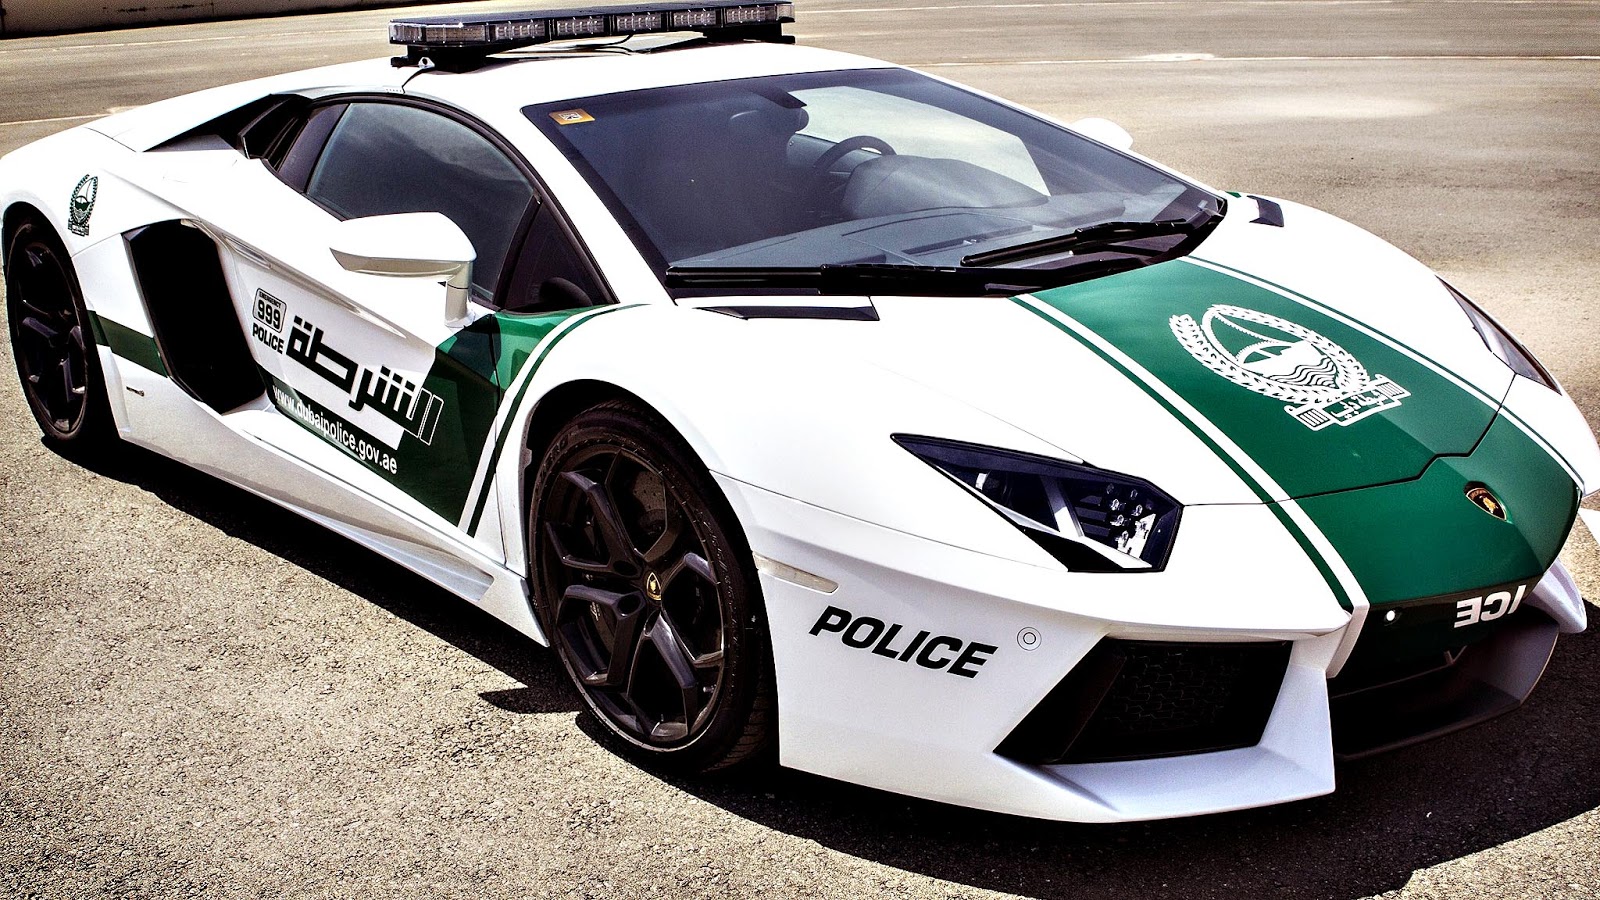 mak aiiiii Polis Dubai...menggunakan kereta Lamborghini Aventador